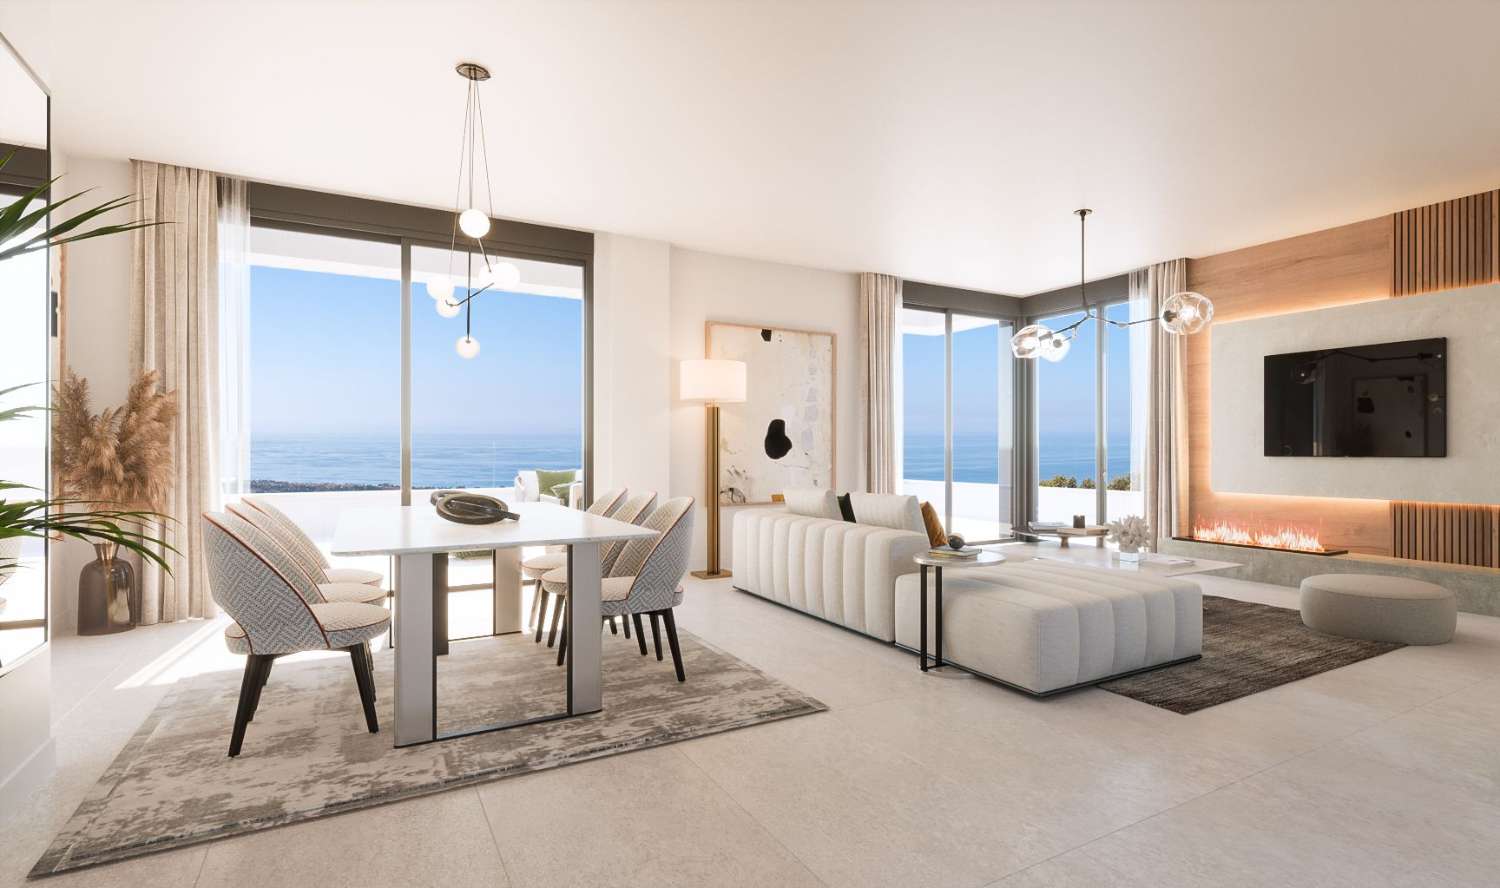 Rymliga och ljusa lägenheter med havsutsikt i Marbella!